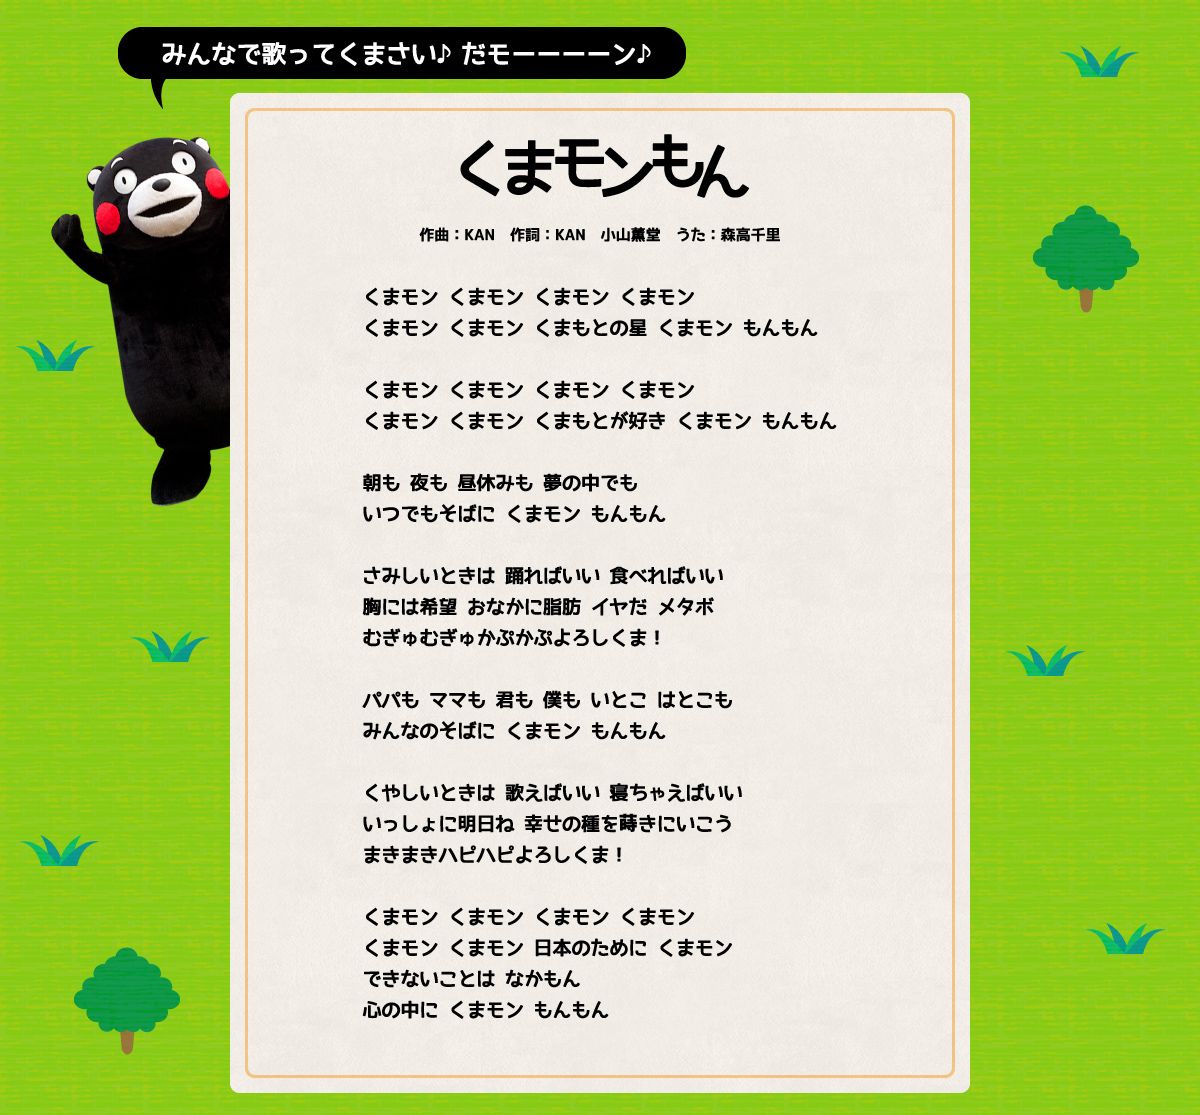 公式イメージソング「くまモンもん」9月25日発売！リリース特設サイト